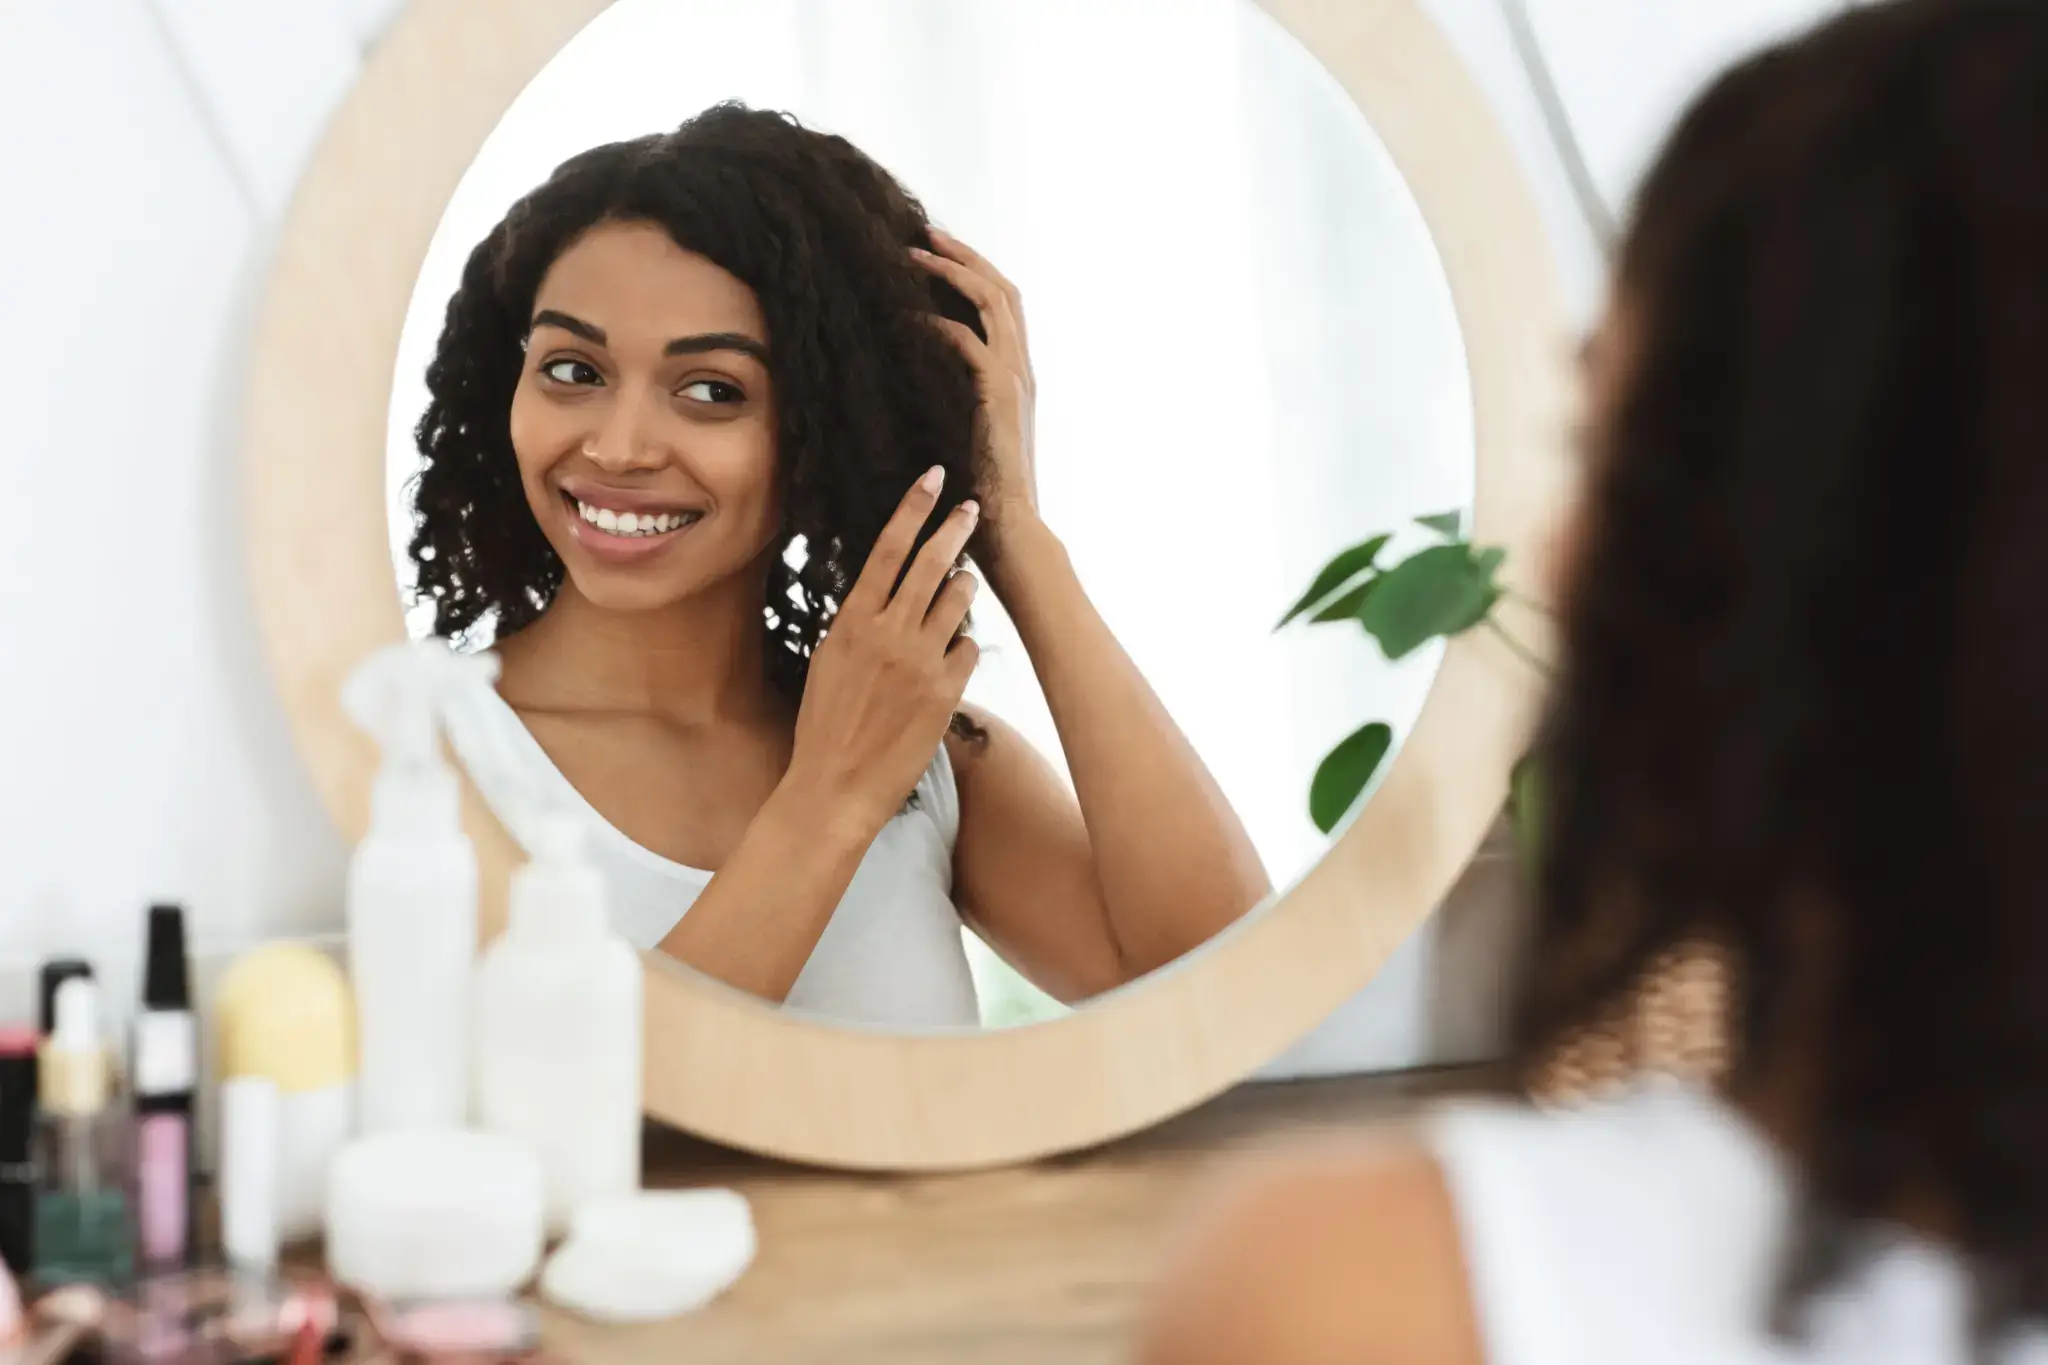 Woman admiring her curly hair in a circular mirror.